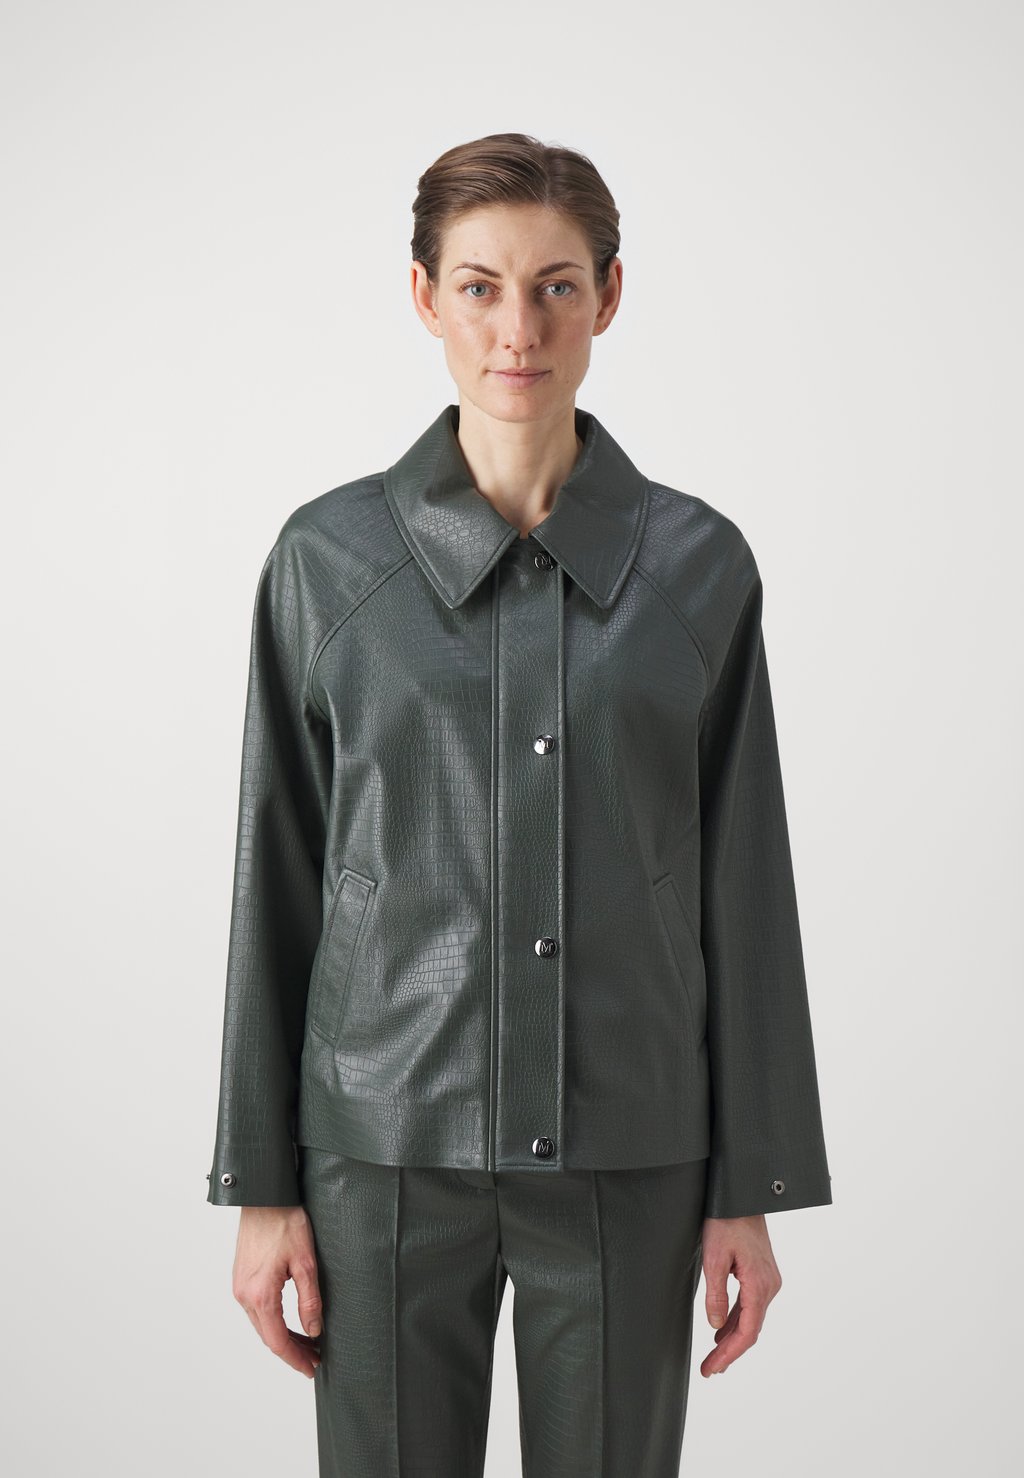 Куртка из искусственной кожи NEPAL Max Mara Leisure, темно-зеленый цена и фото